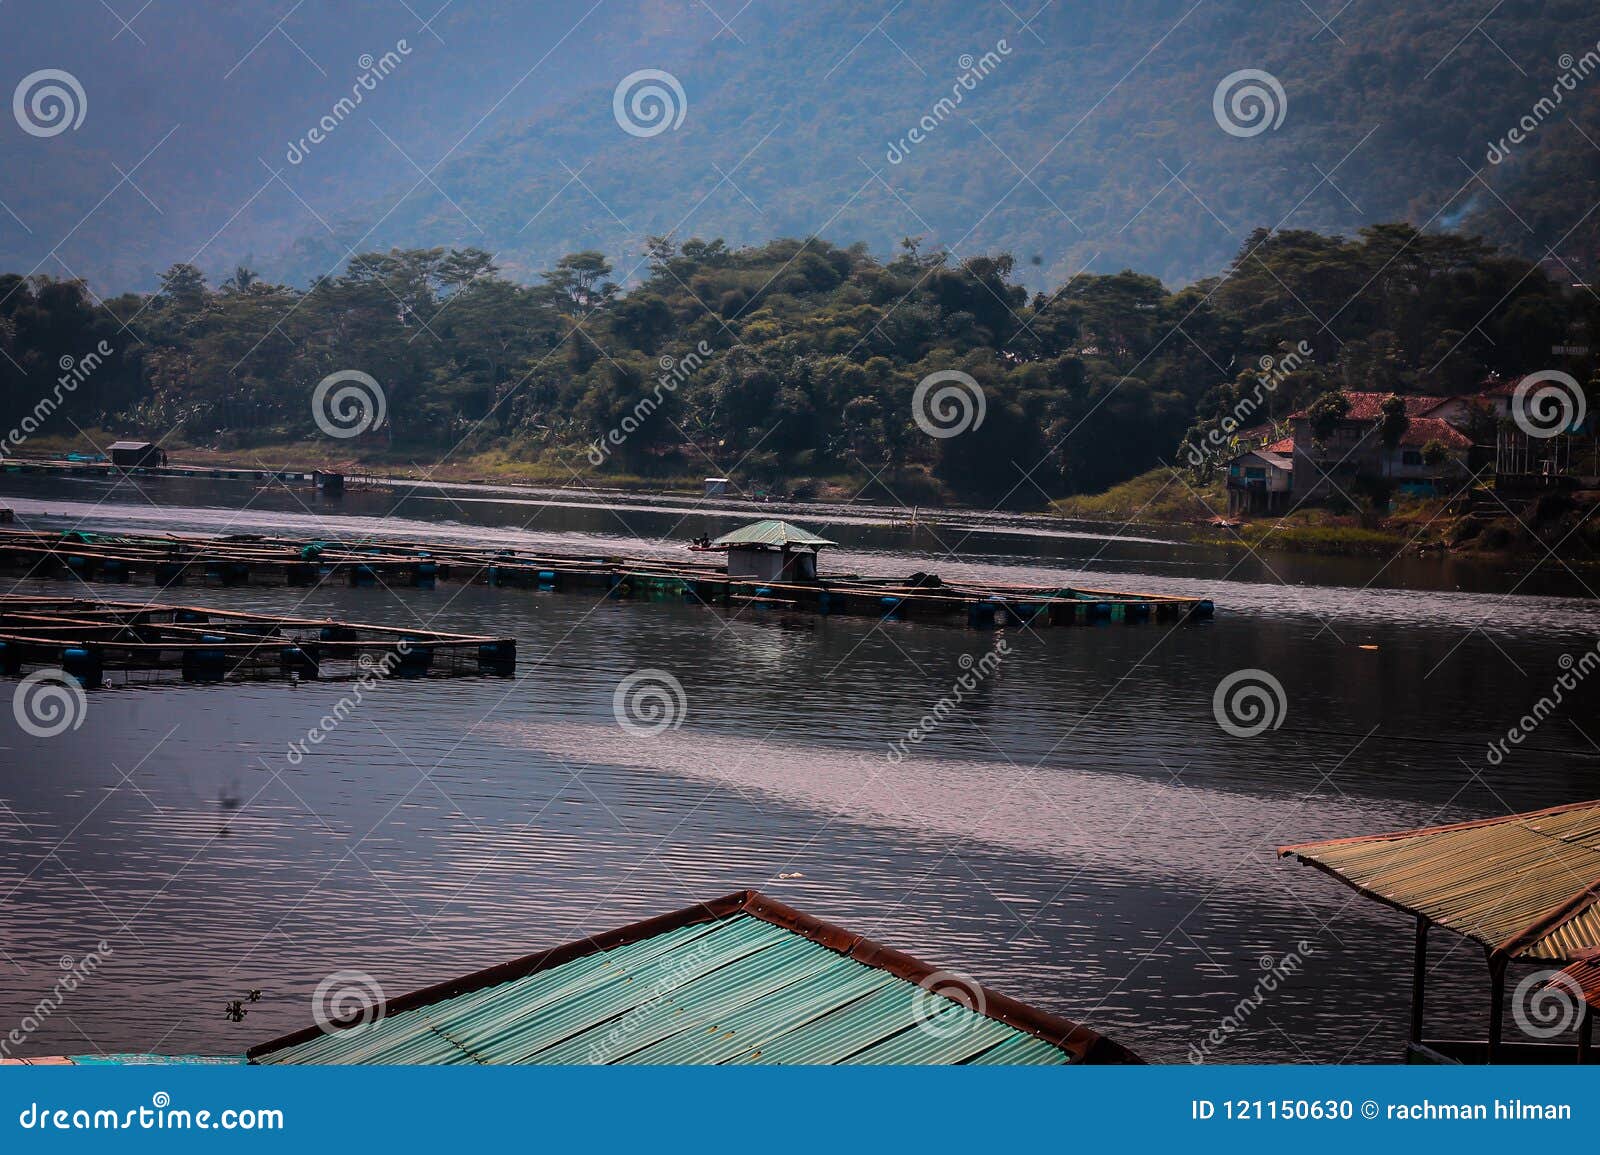 Keramba on the Saguling Lake Stock Photo - Image of cloud, green